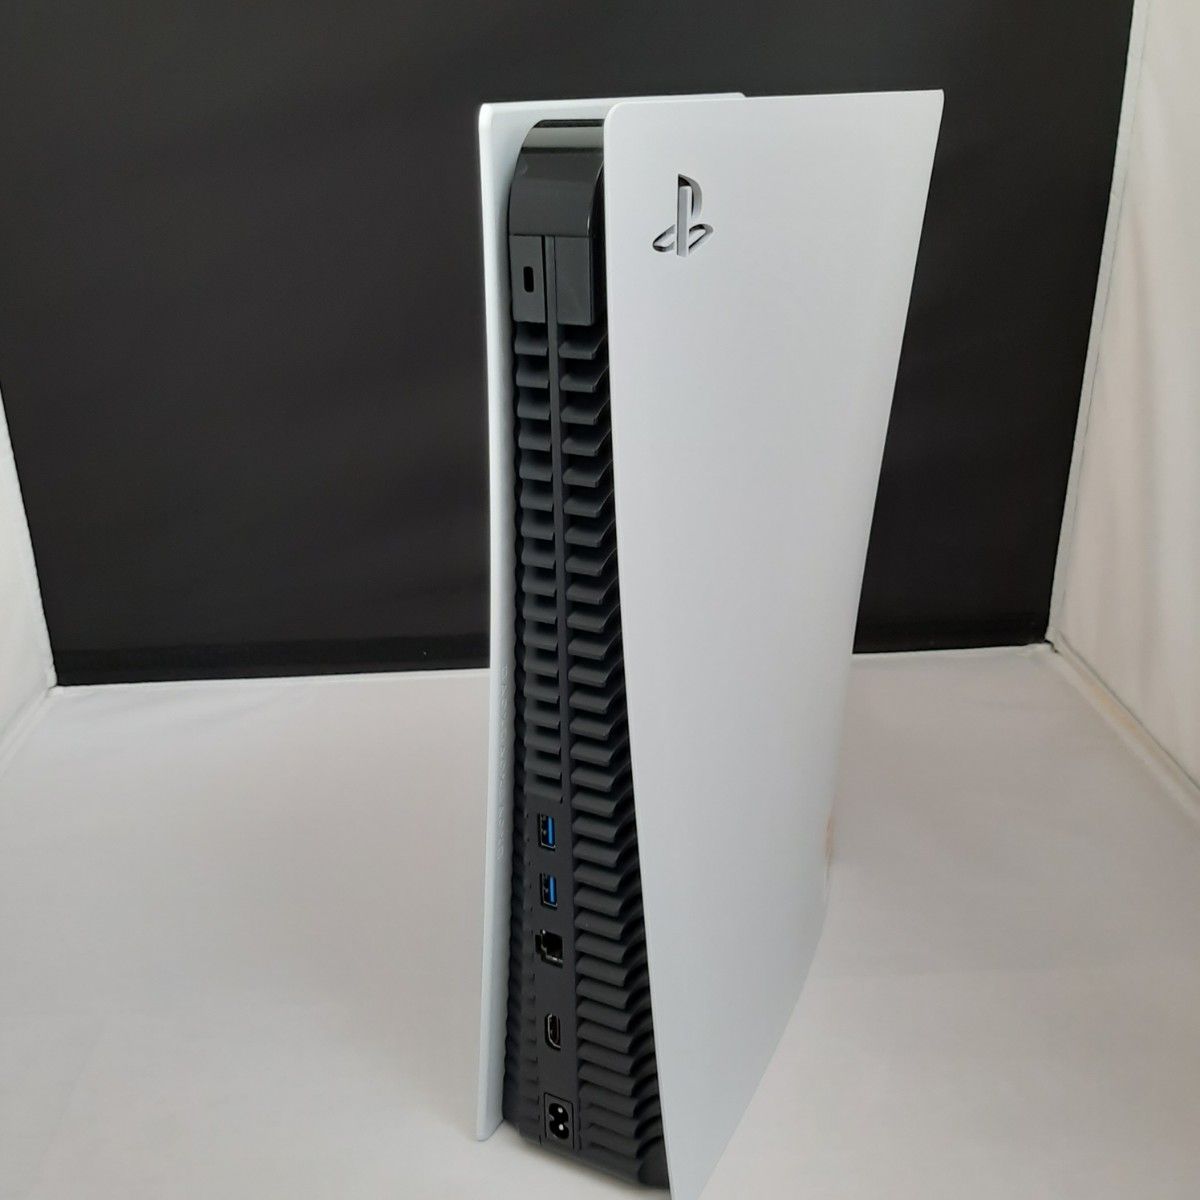 プレイステーション5 PlayStation 5 本体 ディスクドライブ 搭載モデル CFI-1100A01 PS5 J1